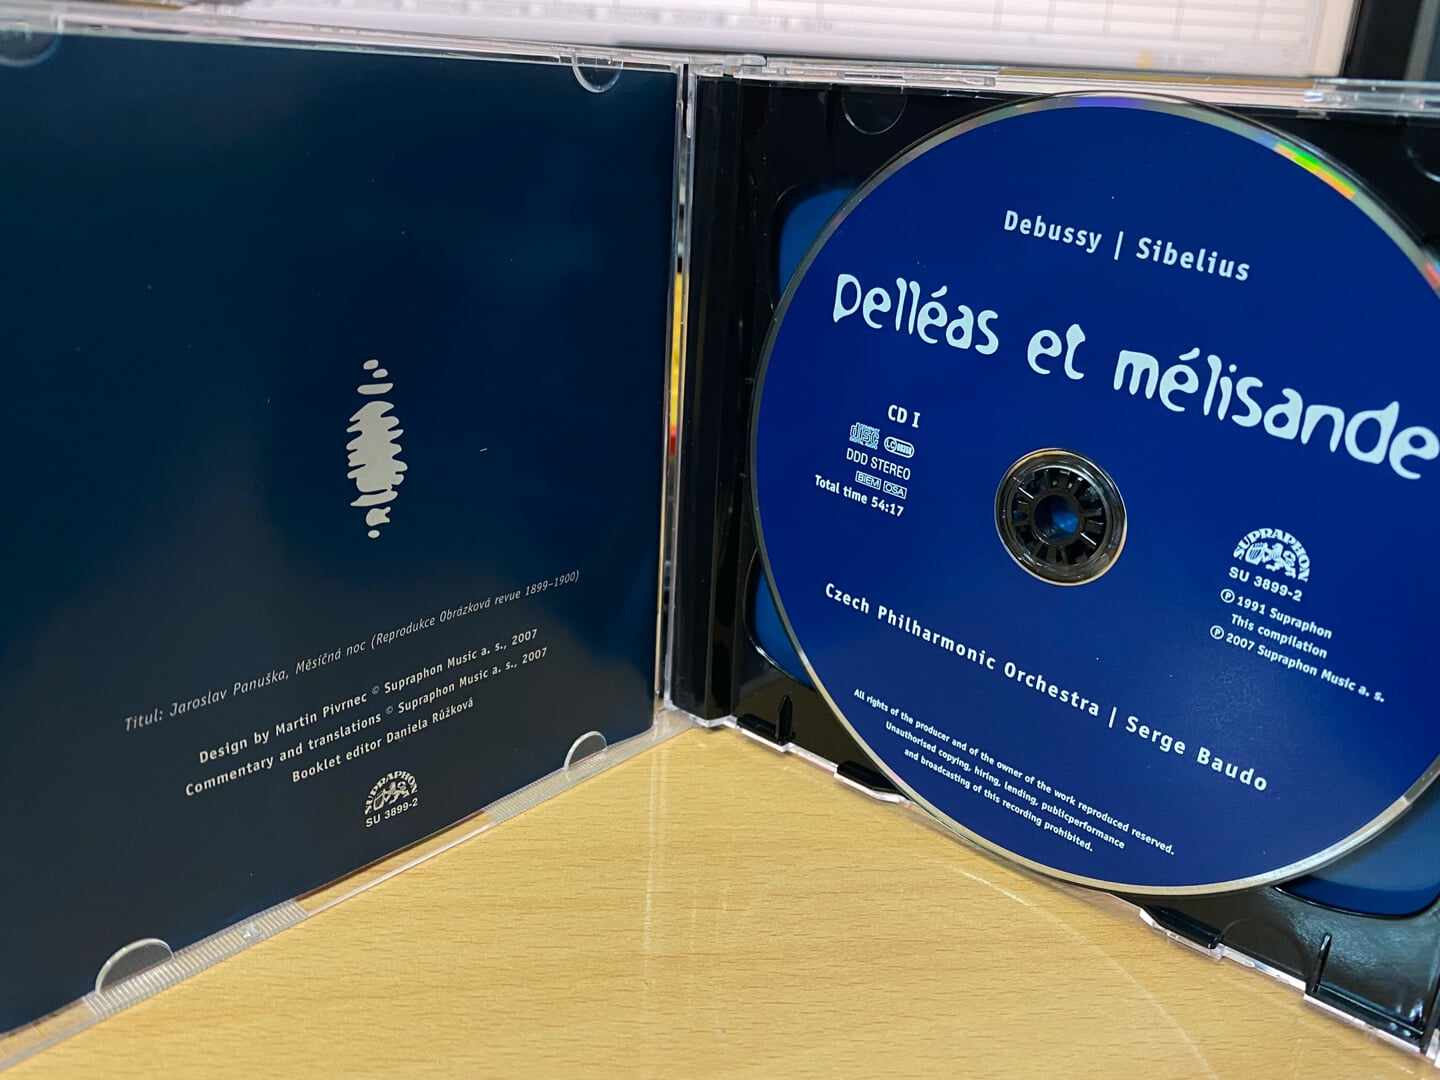 세르주 보도 - Serge Baudo - Pelleas Et Melisande (펠리아스와 멜리장드) 2Cds [체코발매]